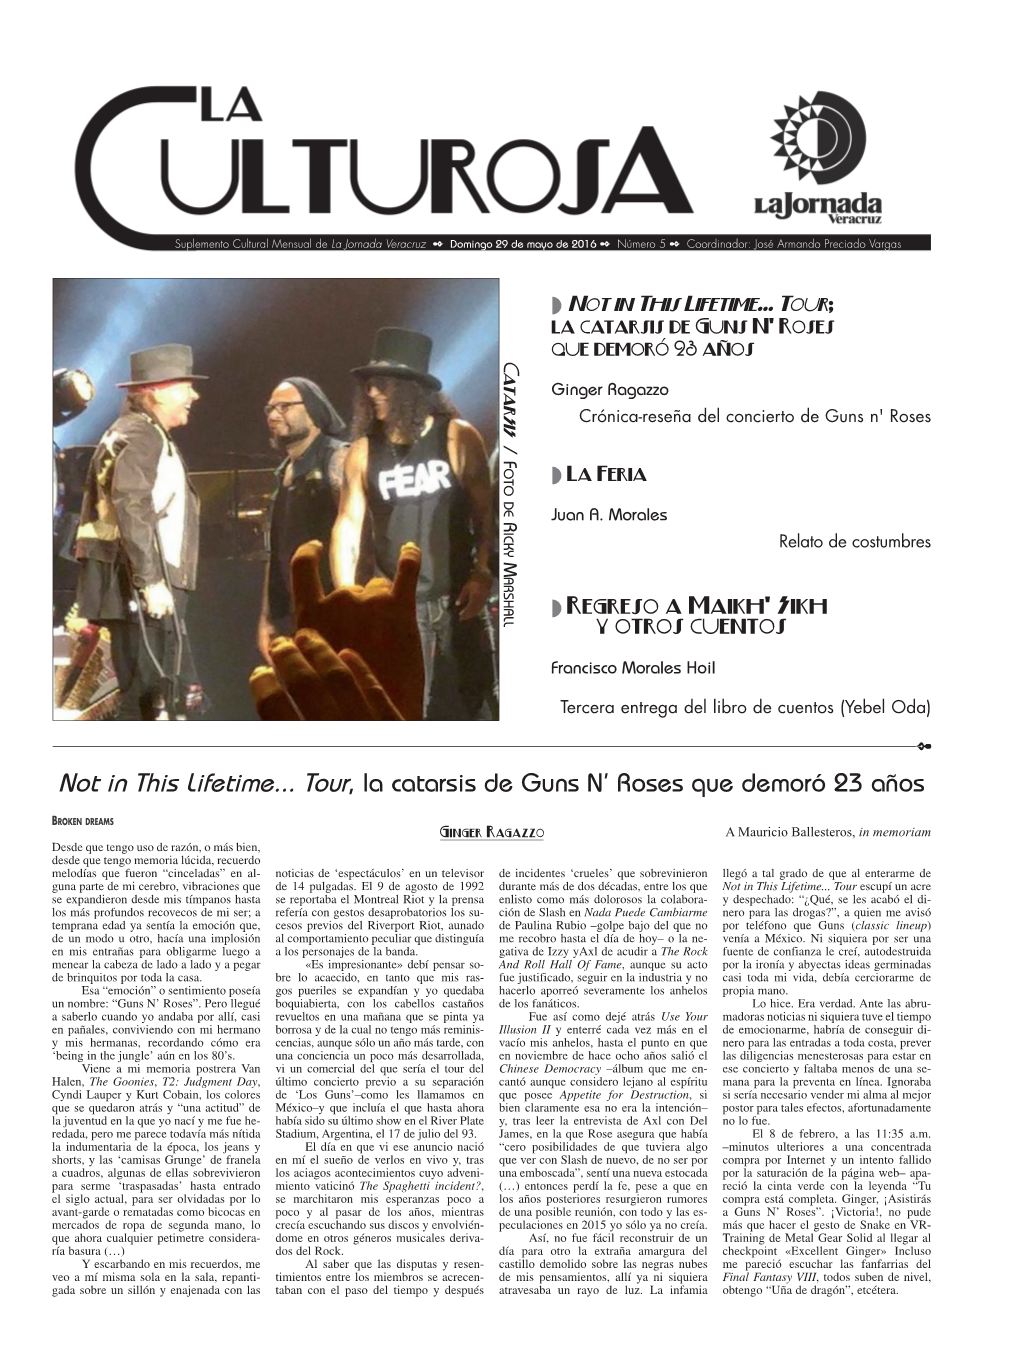 Not in This Lifetime... Tour, La Catarsis De Guns N' Roses Que Demoró 23